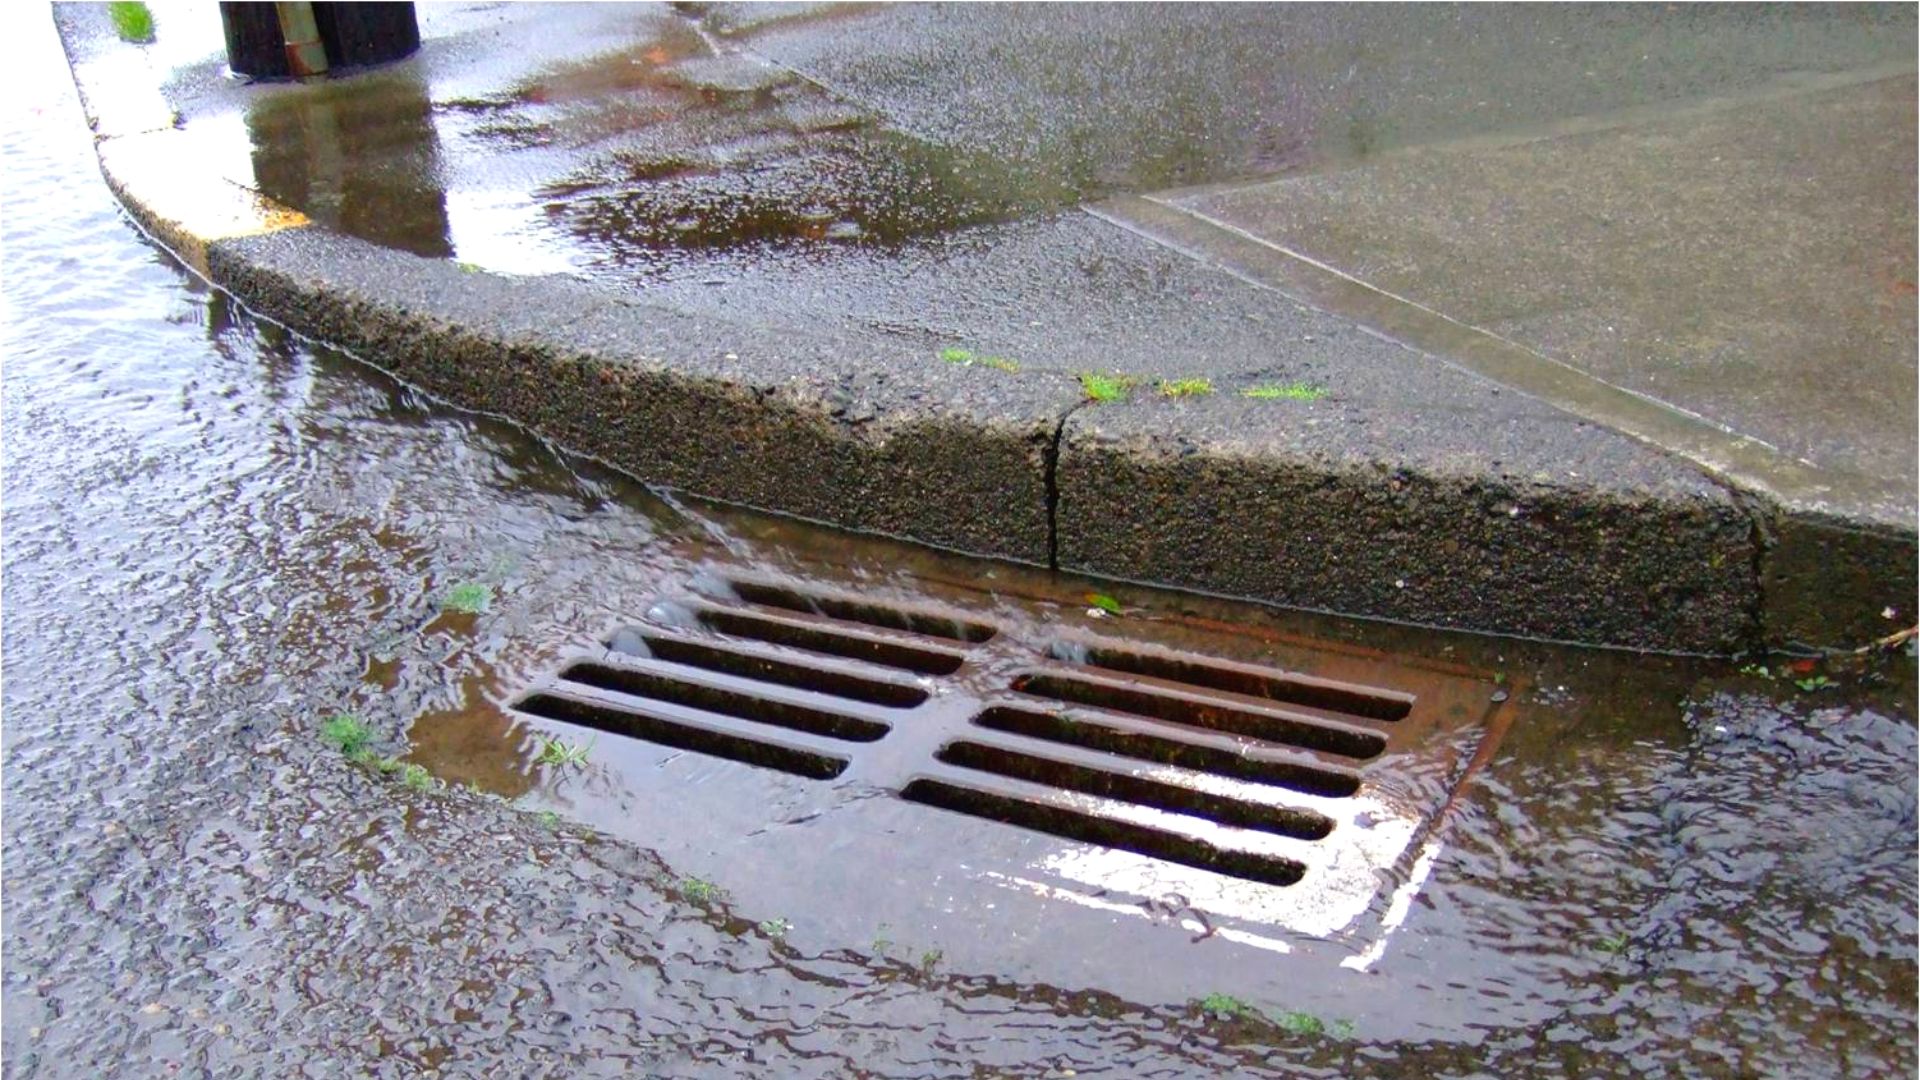 Brown Rainwater Flowing Down Street Stormwater Drain